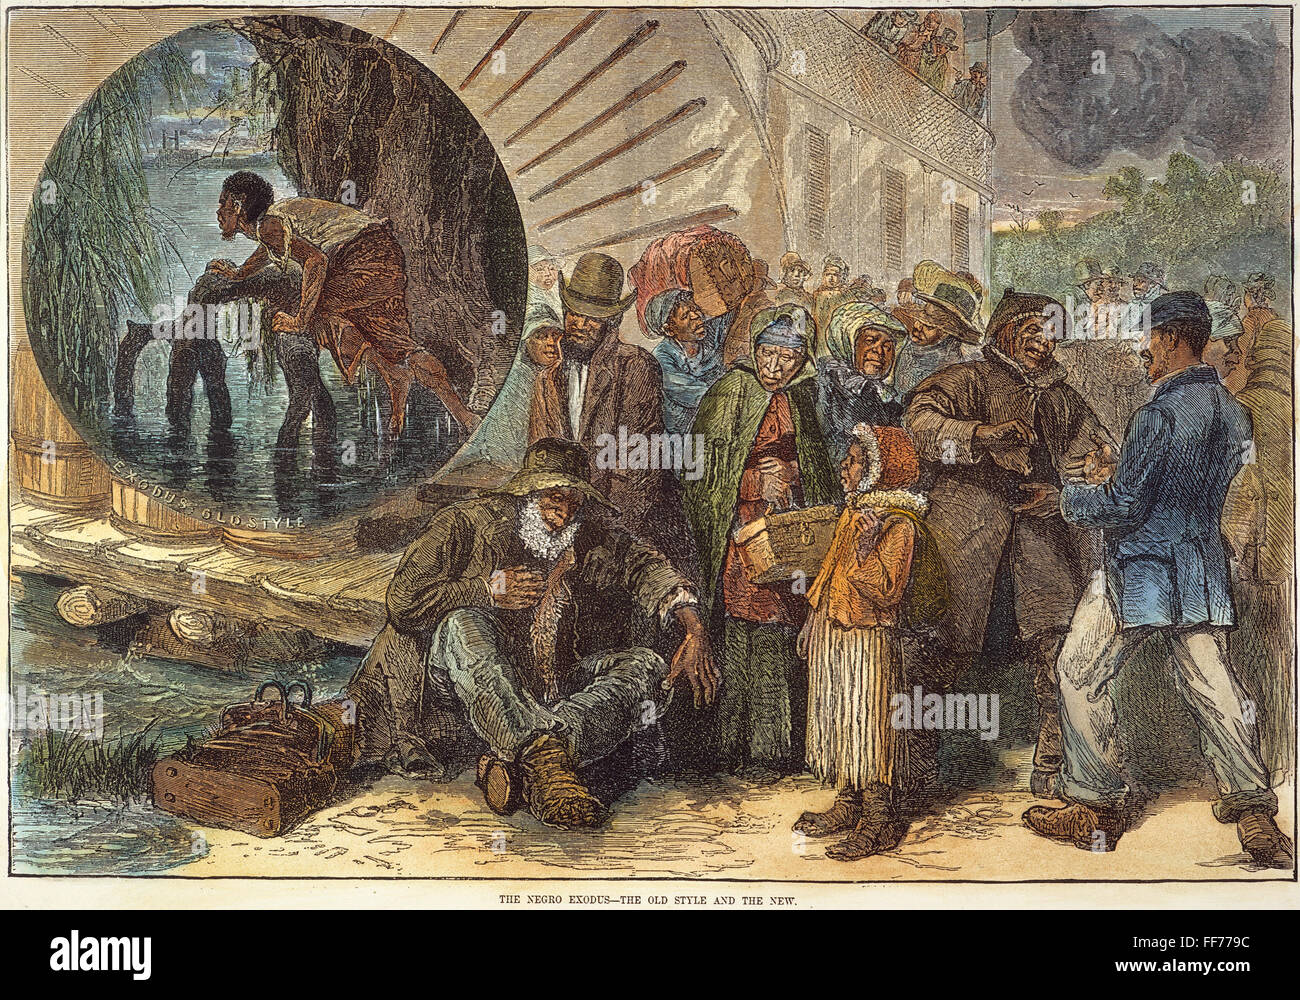 Exode noir, 1880. /Nla migration des Noirs du Sud vers le nord et l'ouest, y compris le Kansas, par rapport à la 'old style' exode d'un esclave (encart). La gravure sur bois, cuisine américaine, 1880. Banque D'Images